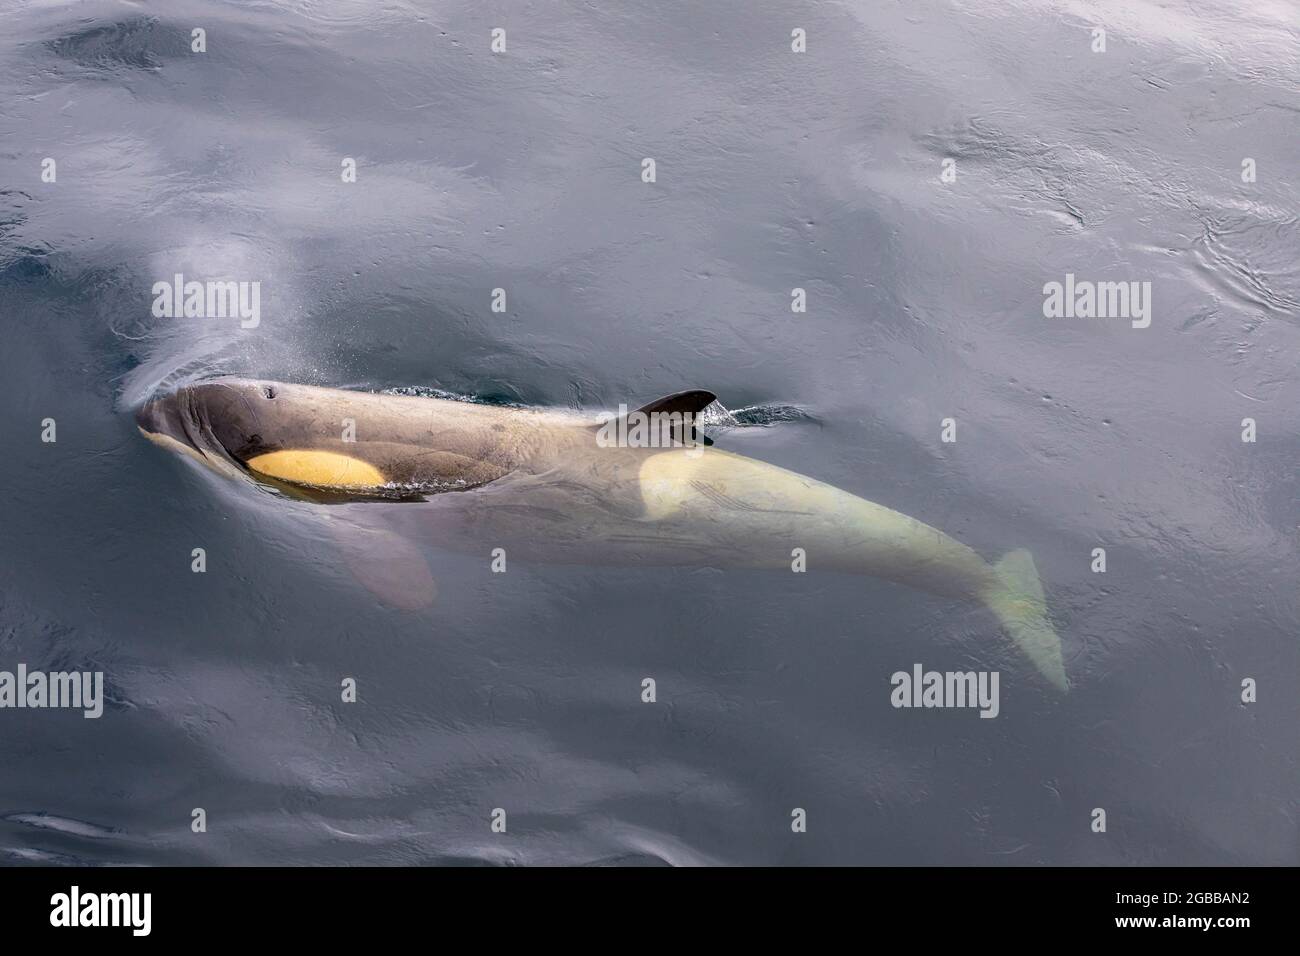 Épaulard de l'écotype Little B (Orcinus orca), surfaçage dans le détroit de Gerlache, Antarctique, régions polaires Banque D'Images